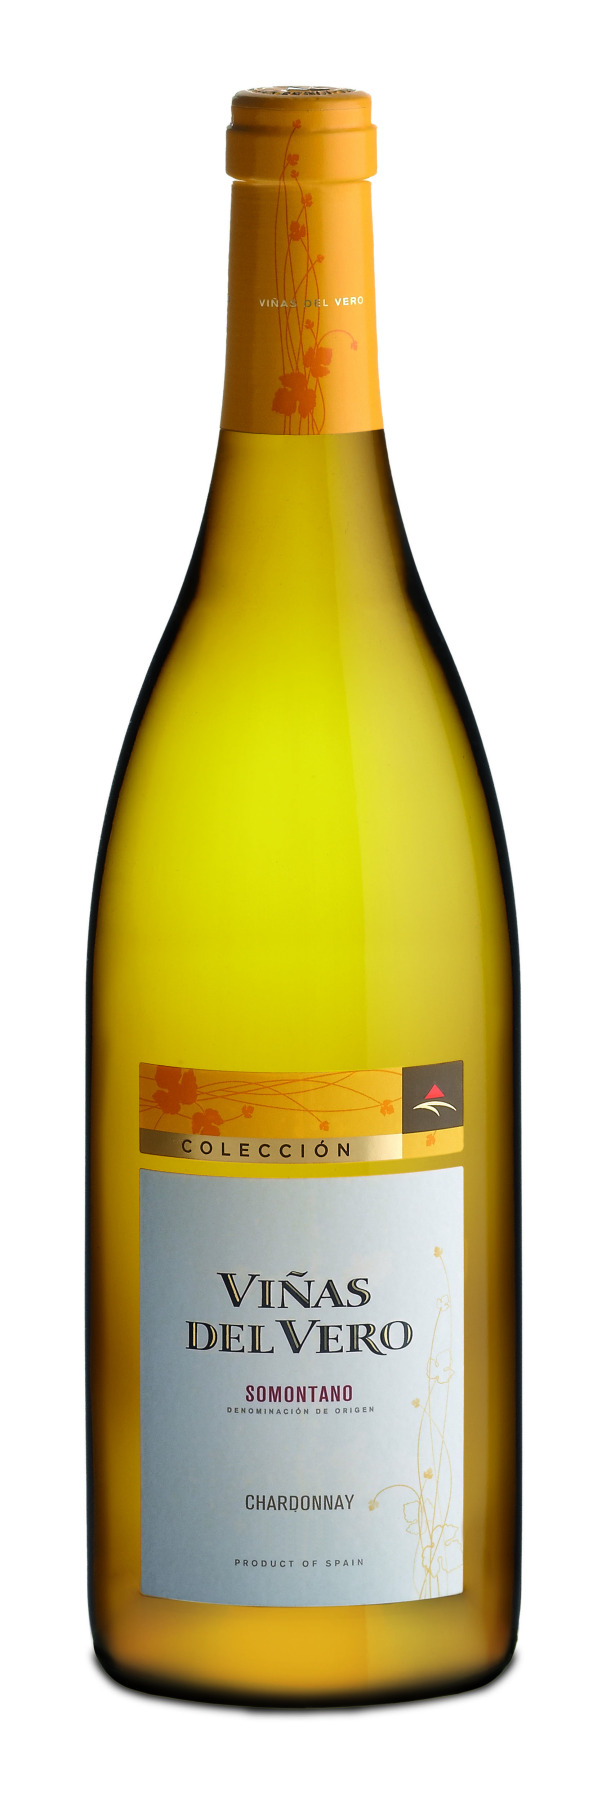 Vinas-del-Vero-Chardonnay-Coleccion-2011-jpg copia